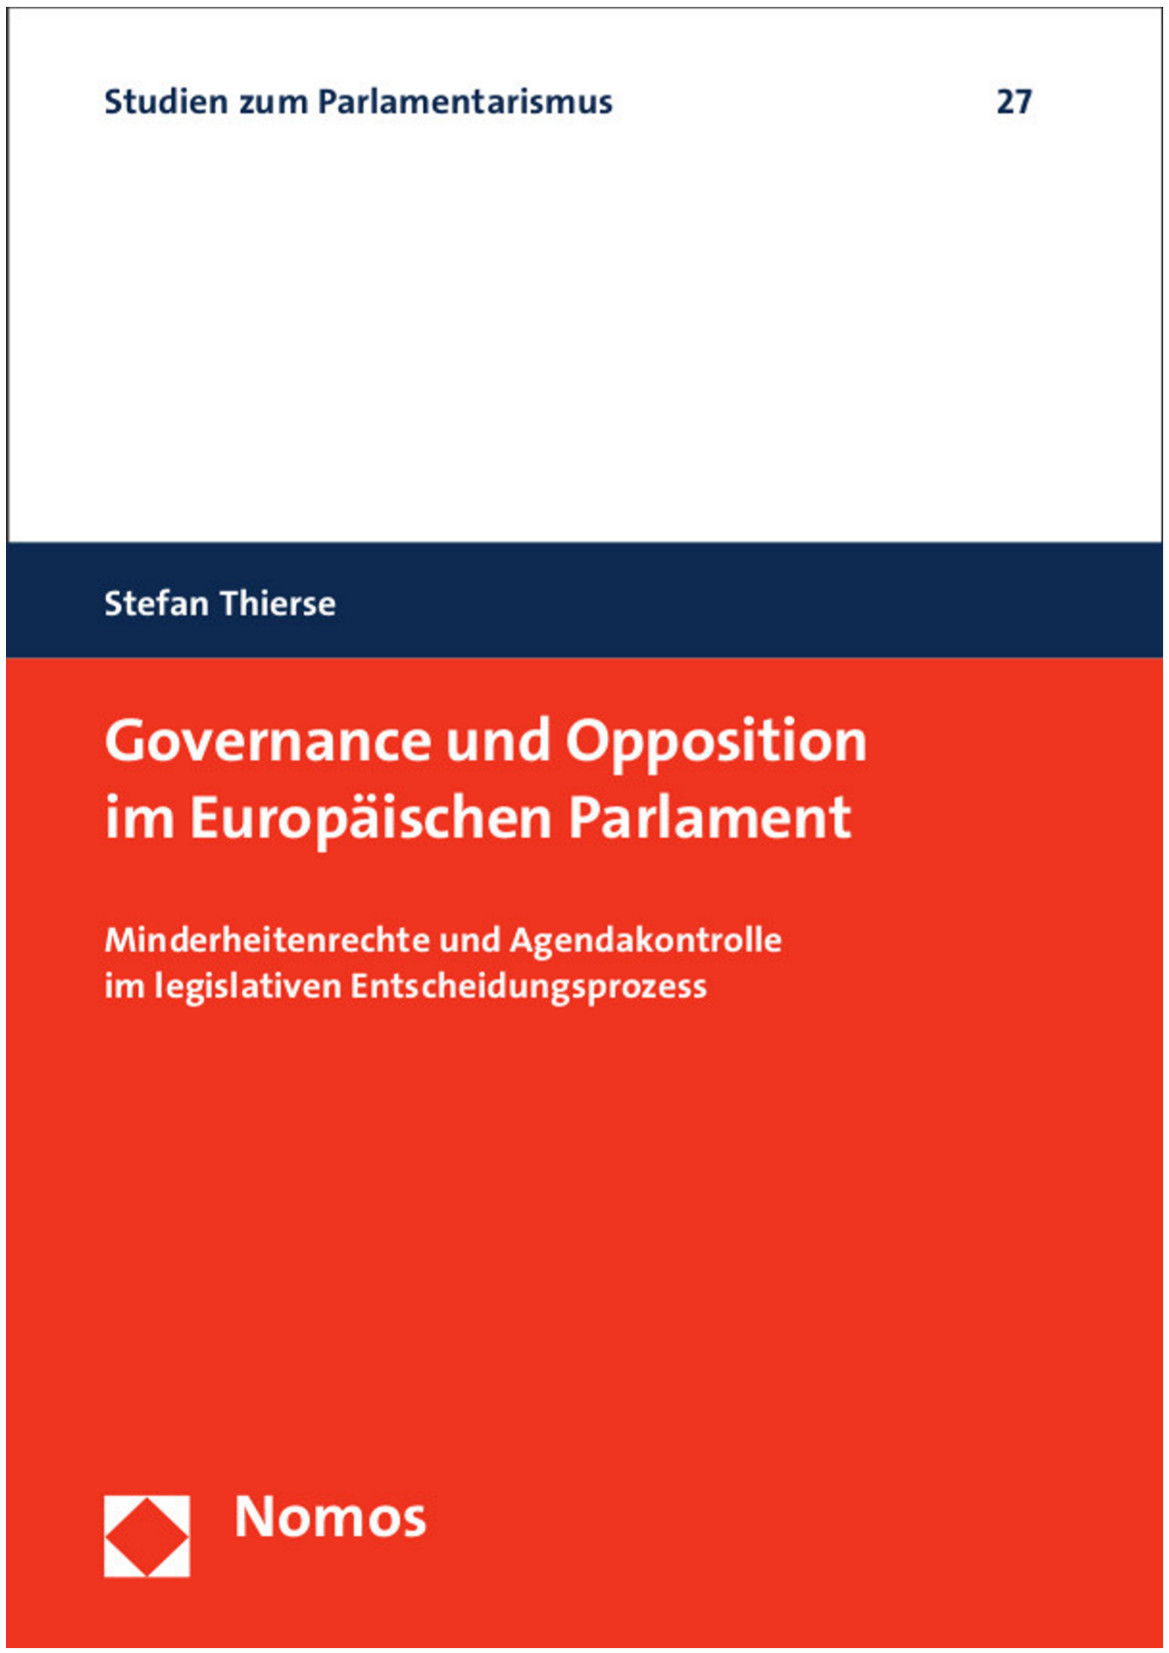 Dr. Stefan Thierse: Governance und Opposition im Europäischen Parlament